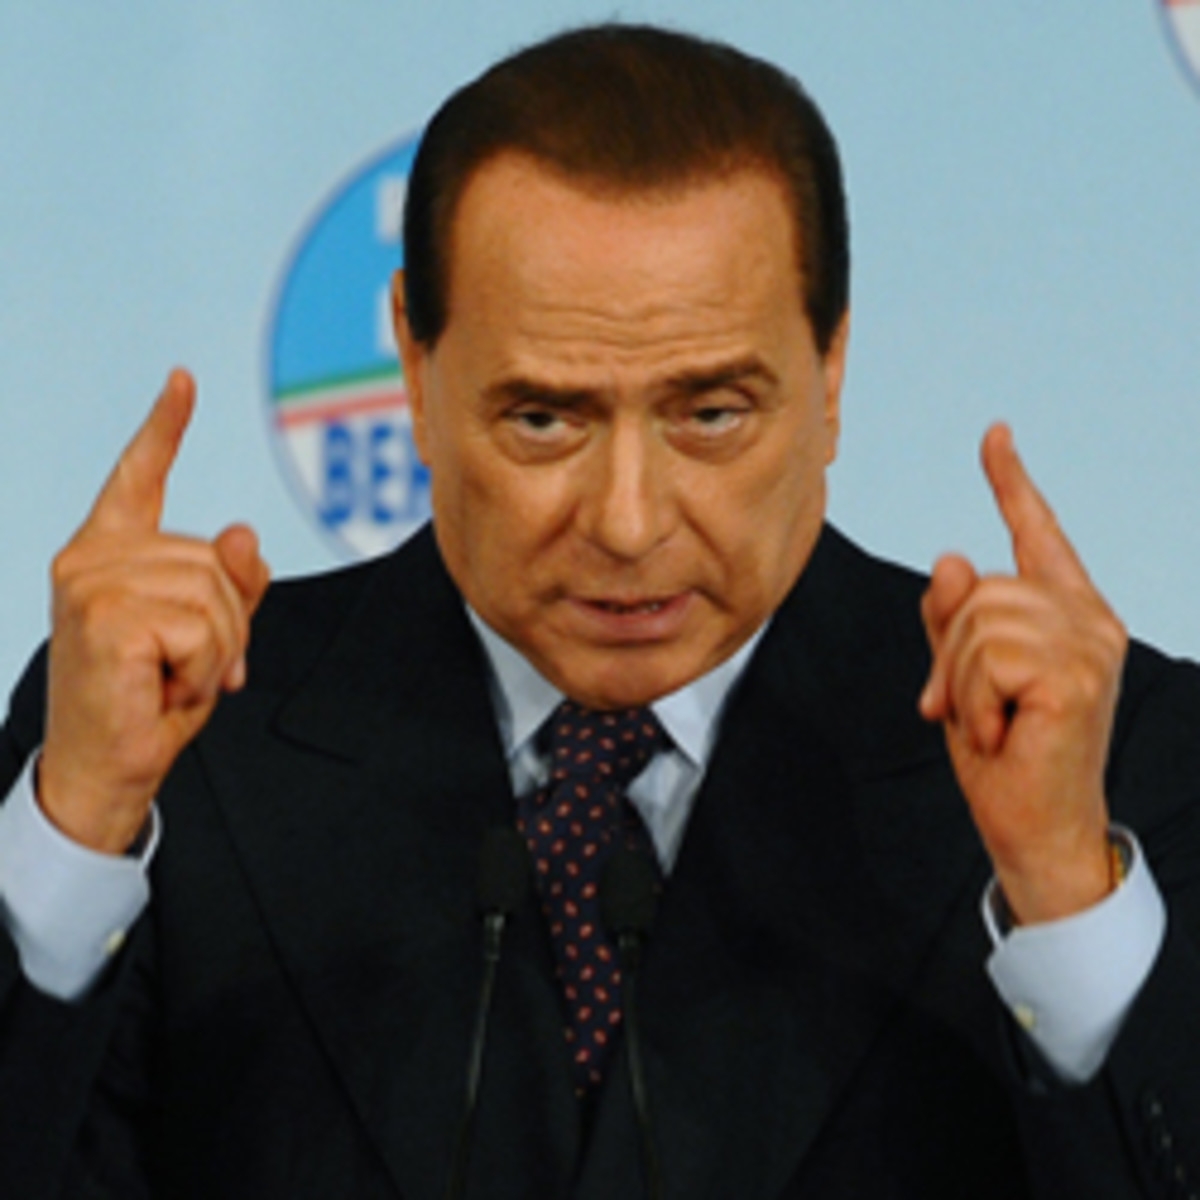 Silvio-Berlusconi-Getty-T